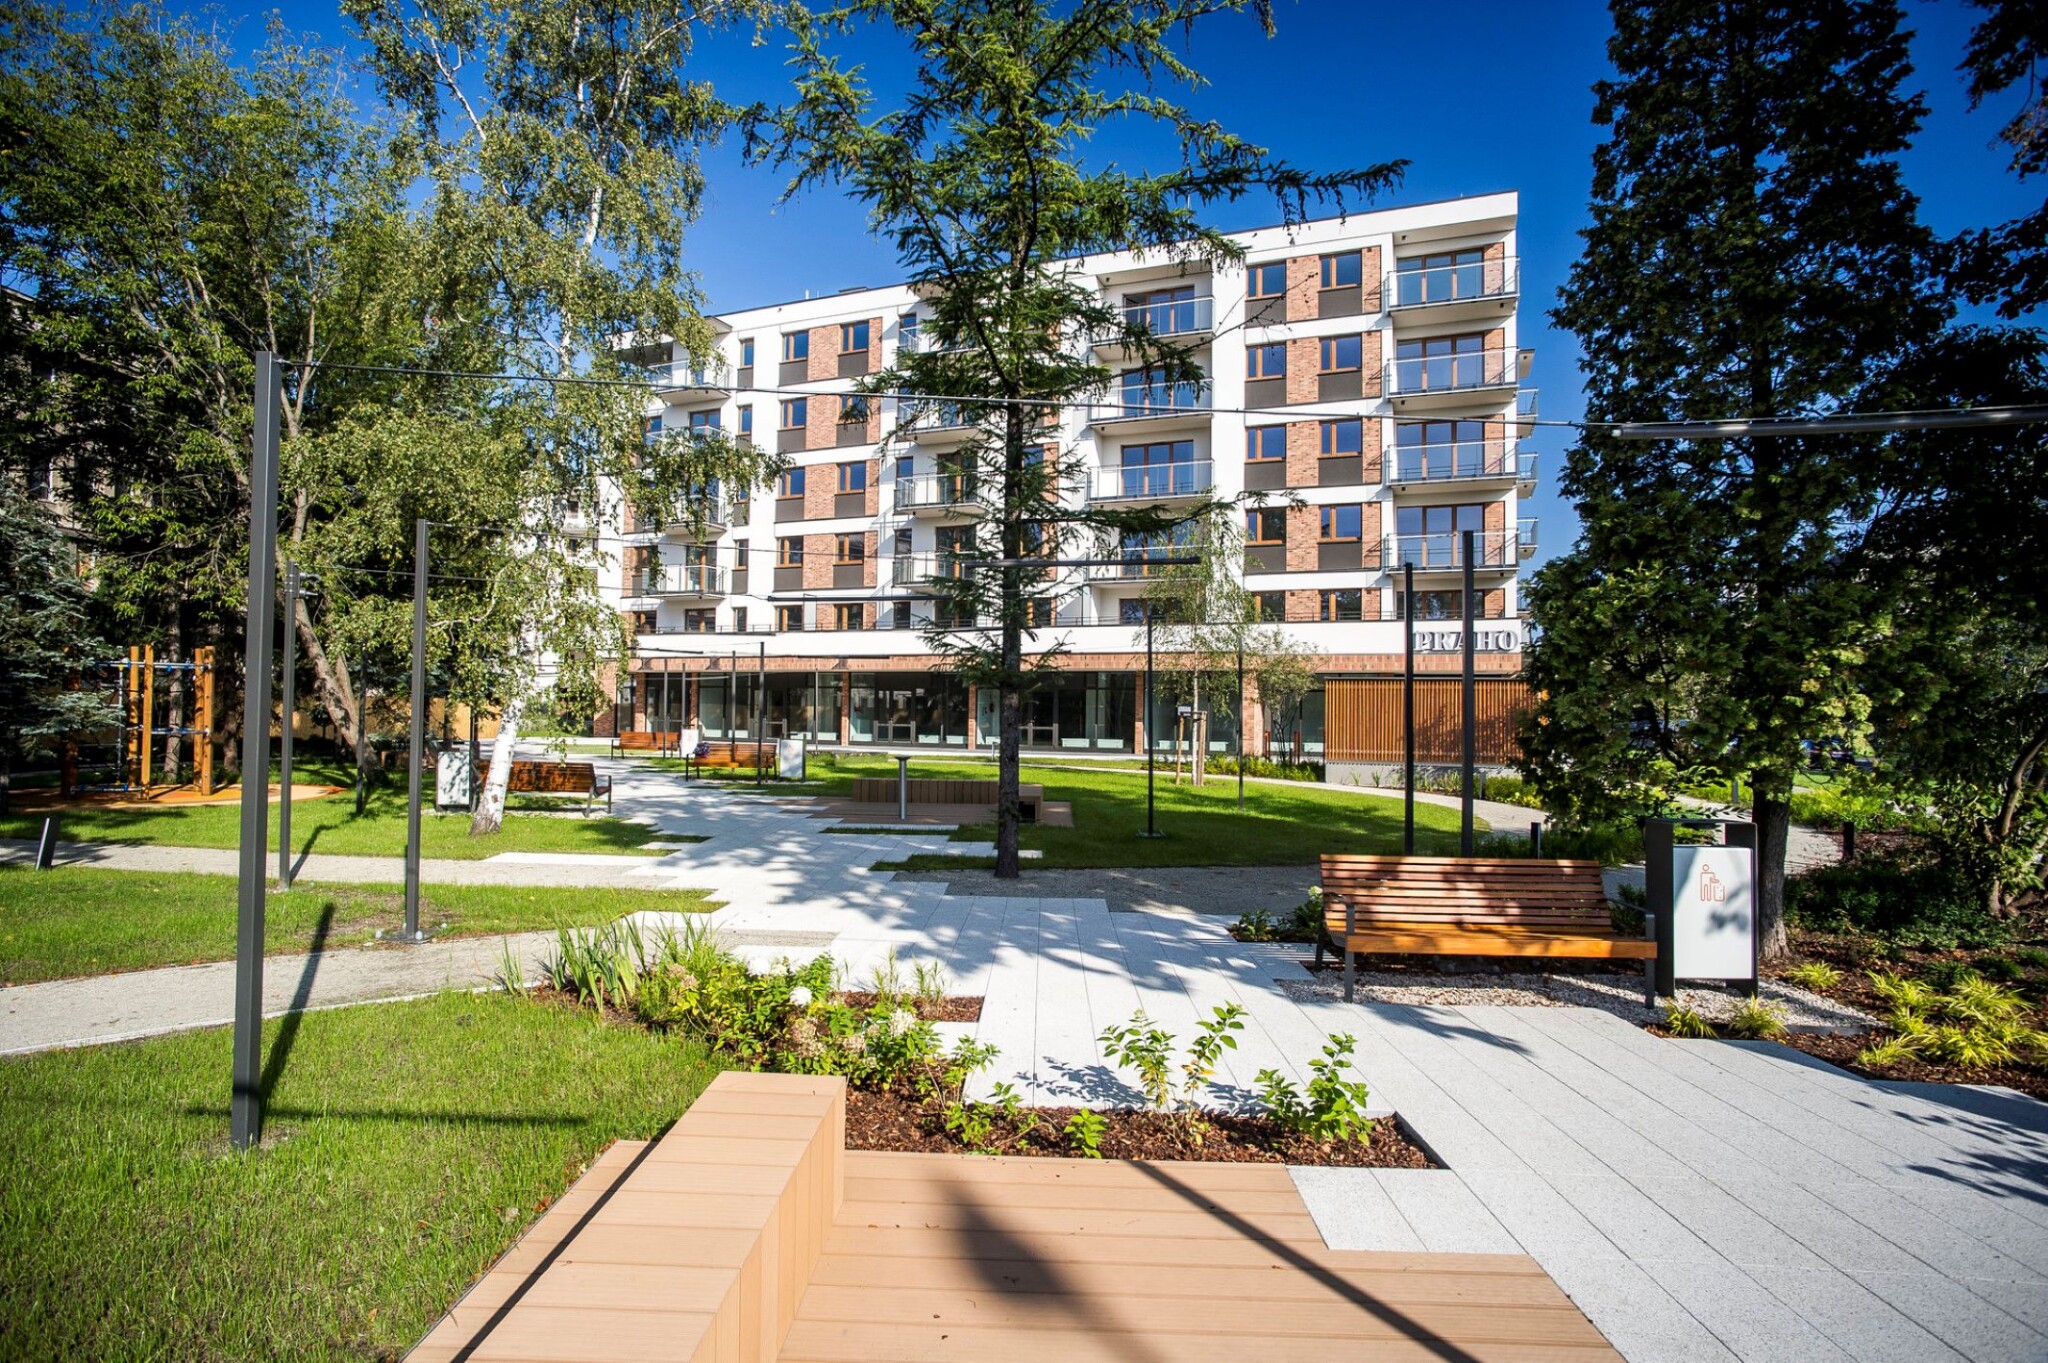 Crestyl zahájil stavbu 400 bytů ve Varšavě. Nemovitosti koupí skupina Heimstaden